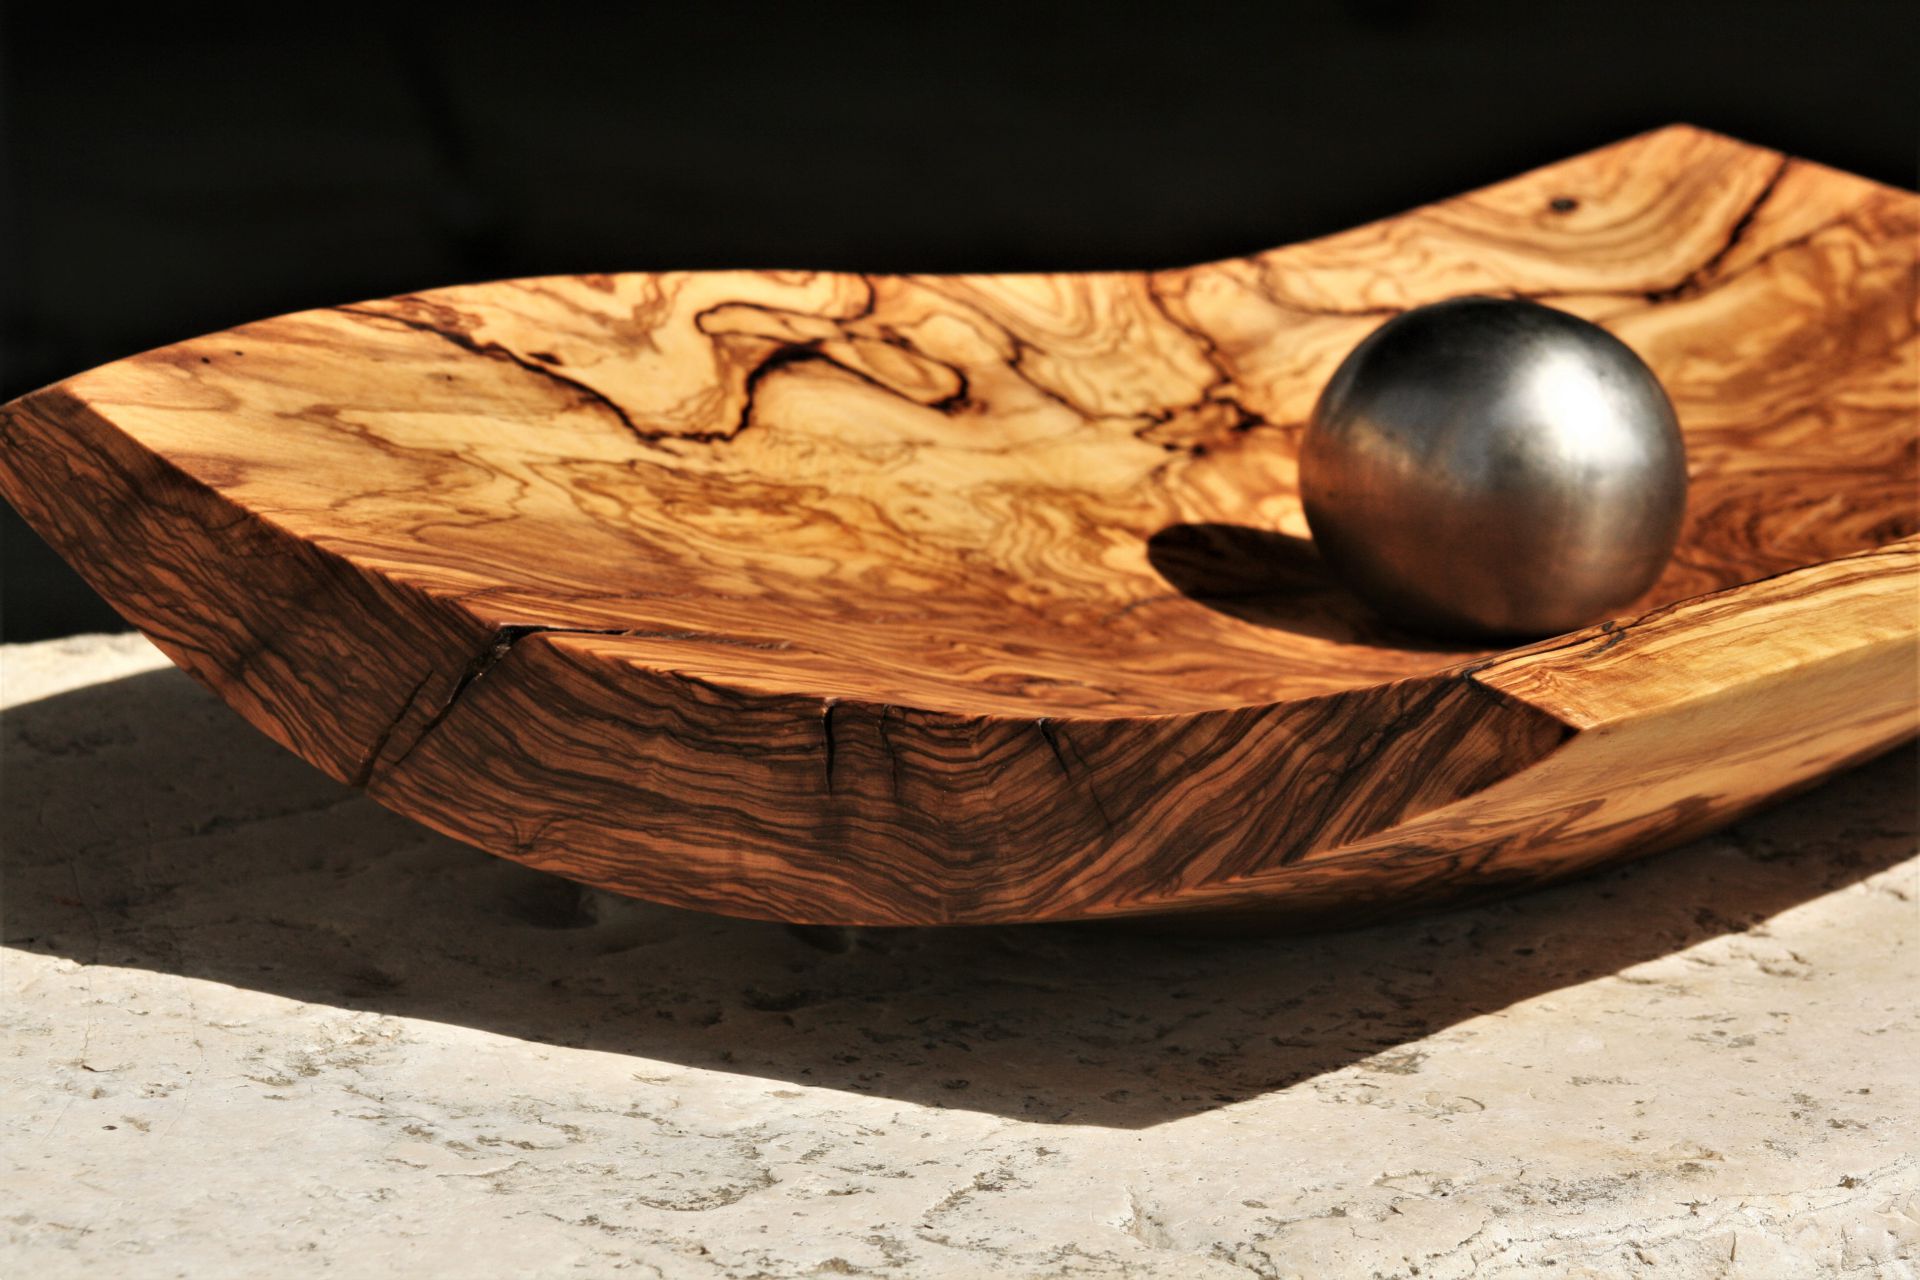 wooden bowls original handmade Mediterranean olive wood unique artist design fruit bowl platter extra large